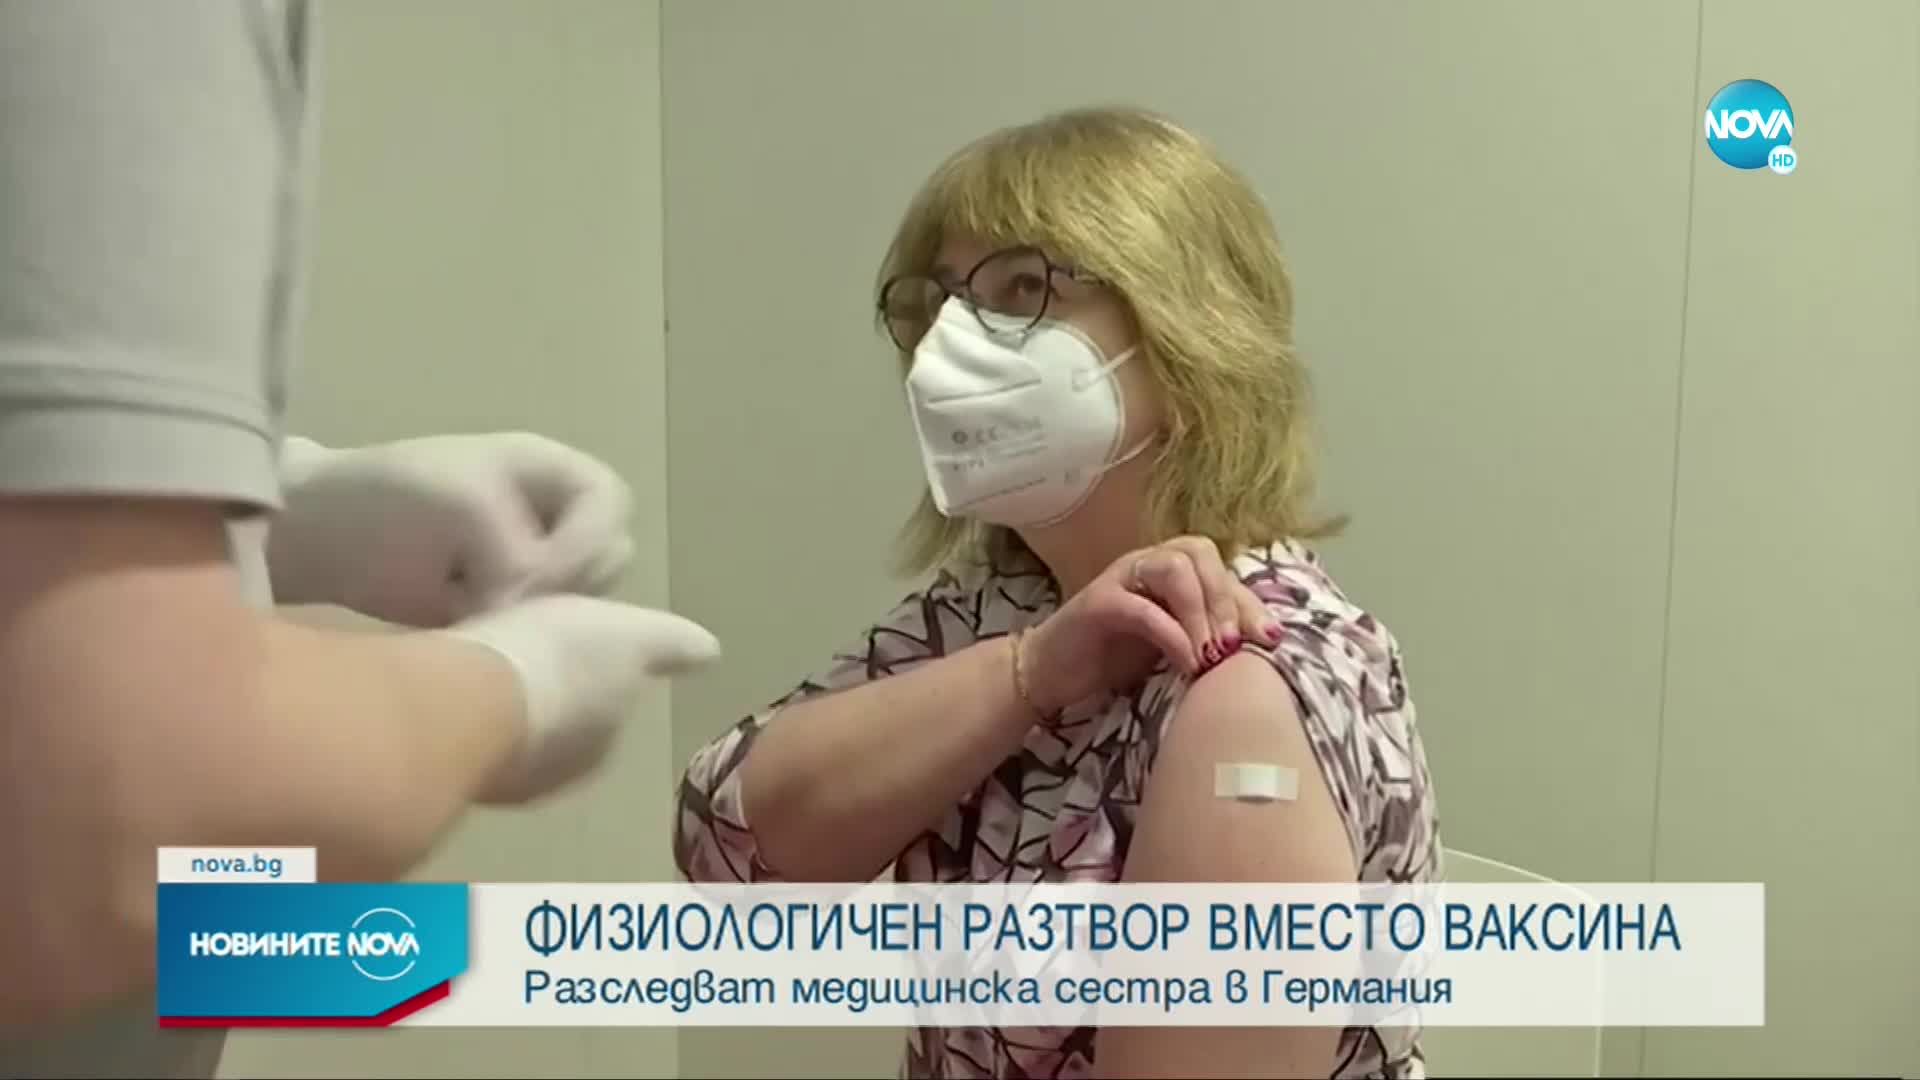 Медицинска сестра слагала физиологичен разтвор вместо ваксина срещу COVID-19